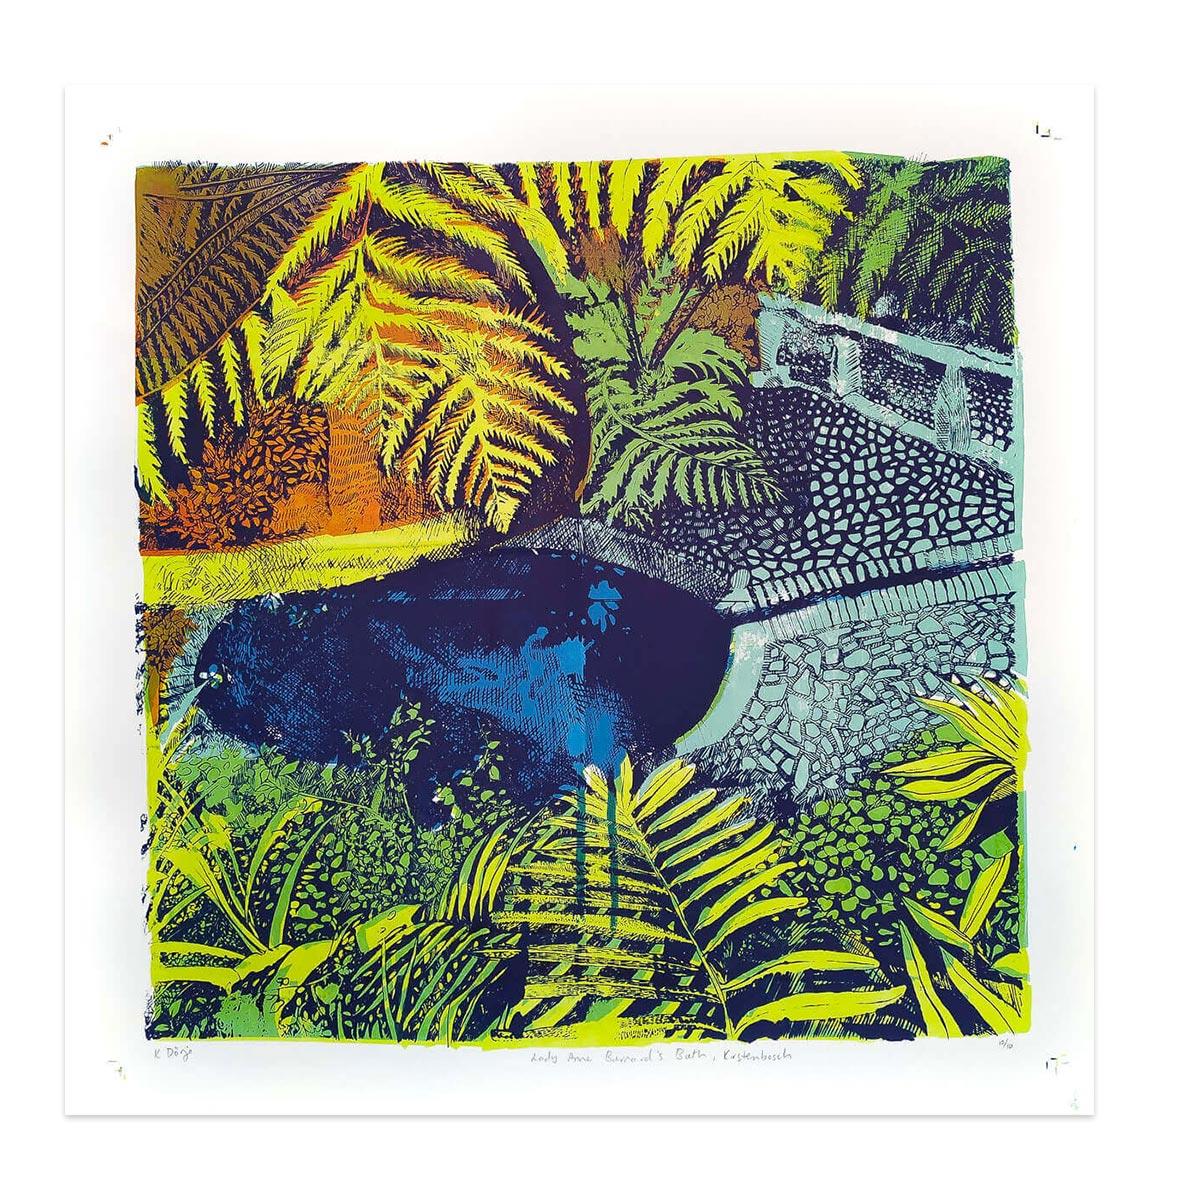 colourful silkscreen print inspired by Kirstenbosch Gardens